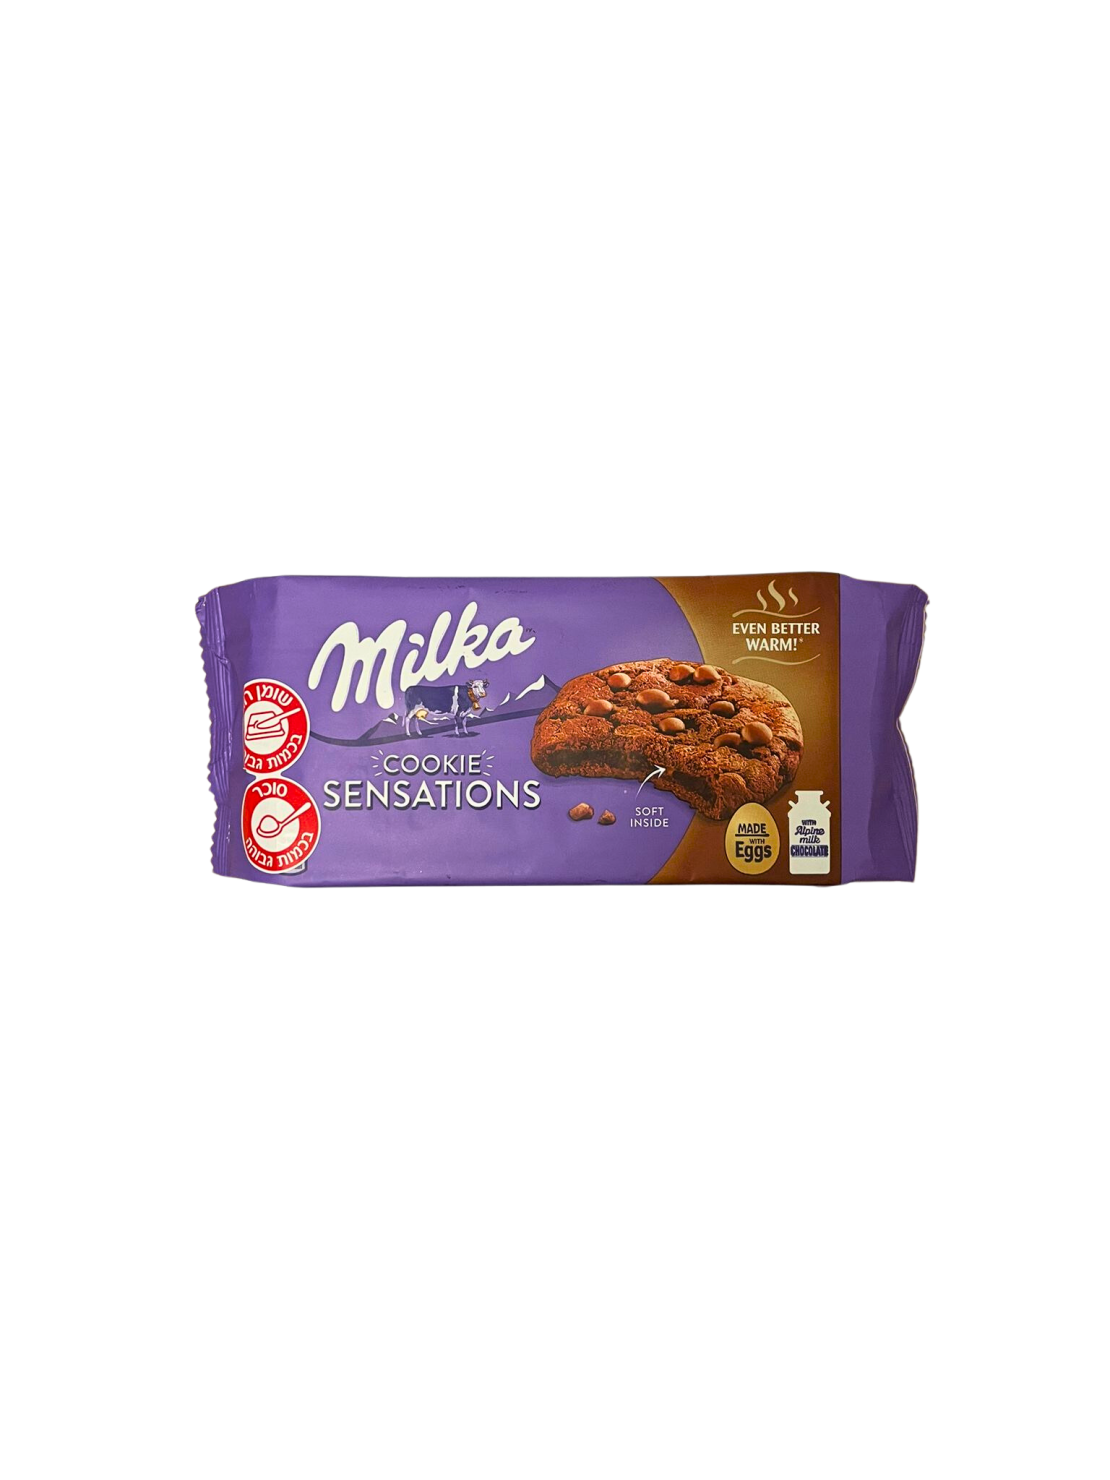 עוגיות מילקה סנסישן במילוי שוקולד חלב - Milka cookie senstions SOFT INSIDE